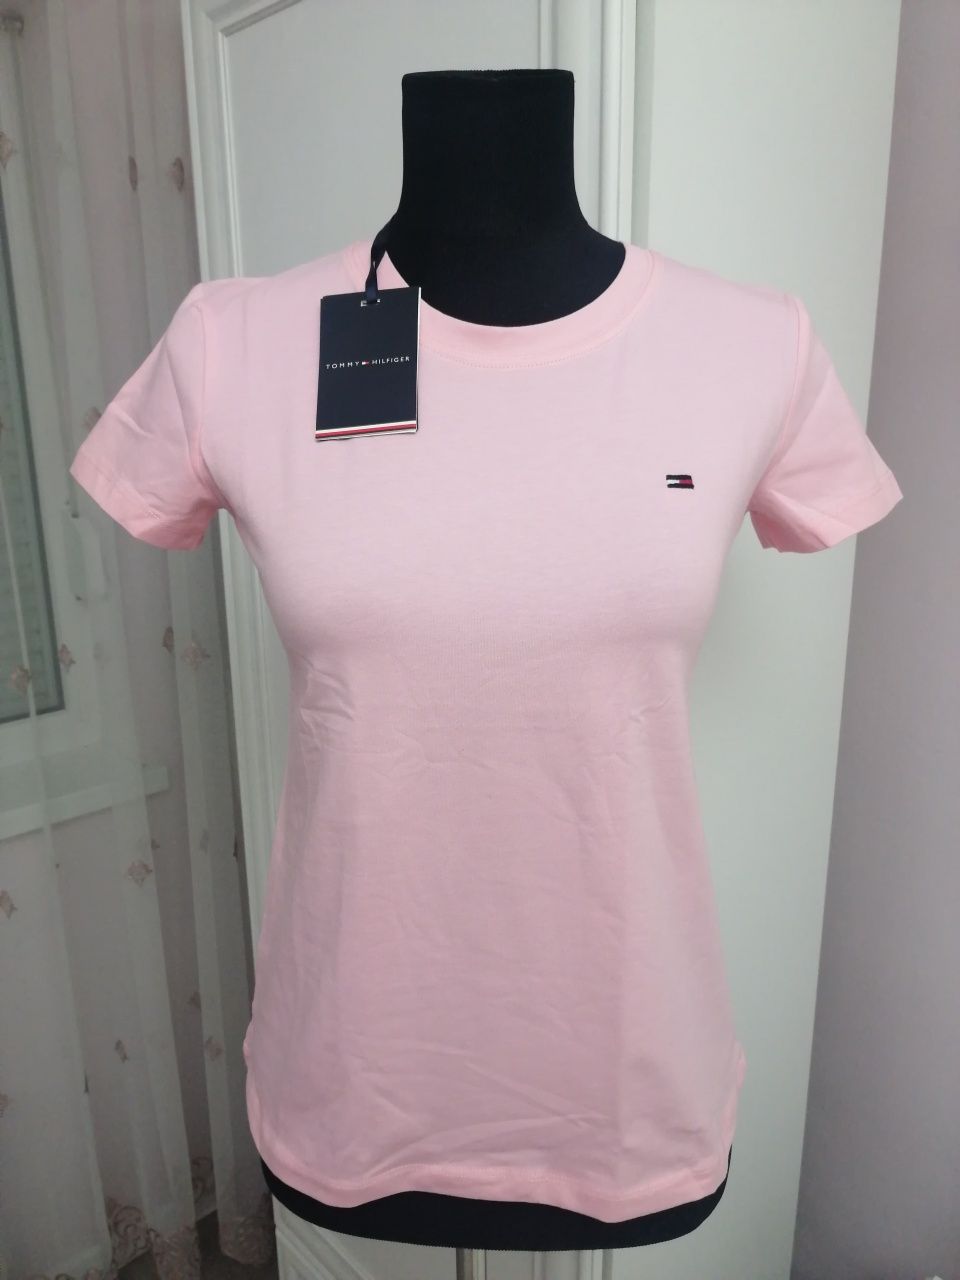 Tricou damă roz deschis, Tommy Hilfiger, mărimea S/36, nou cu etichetă